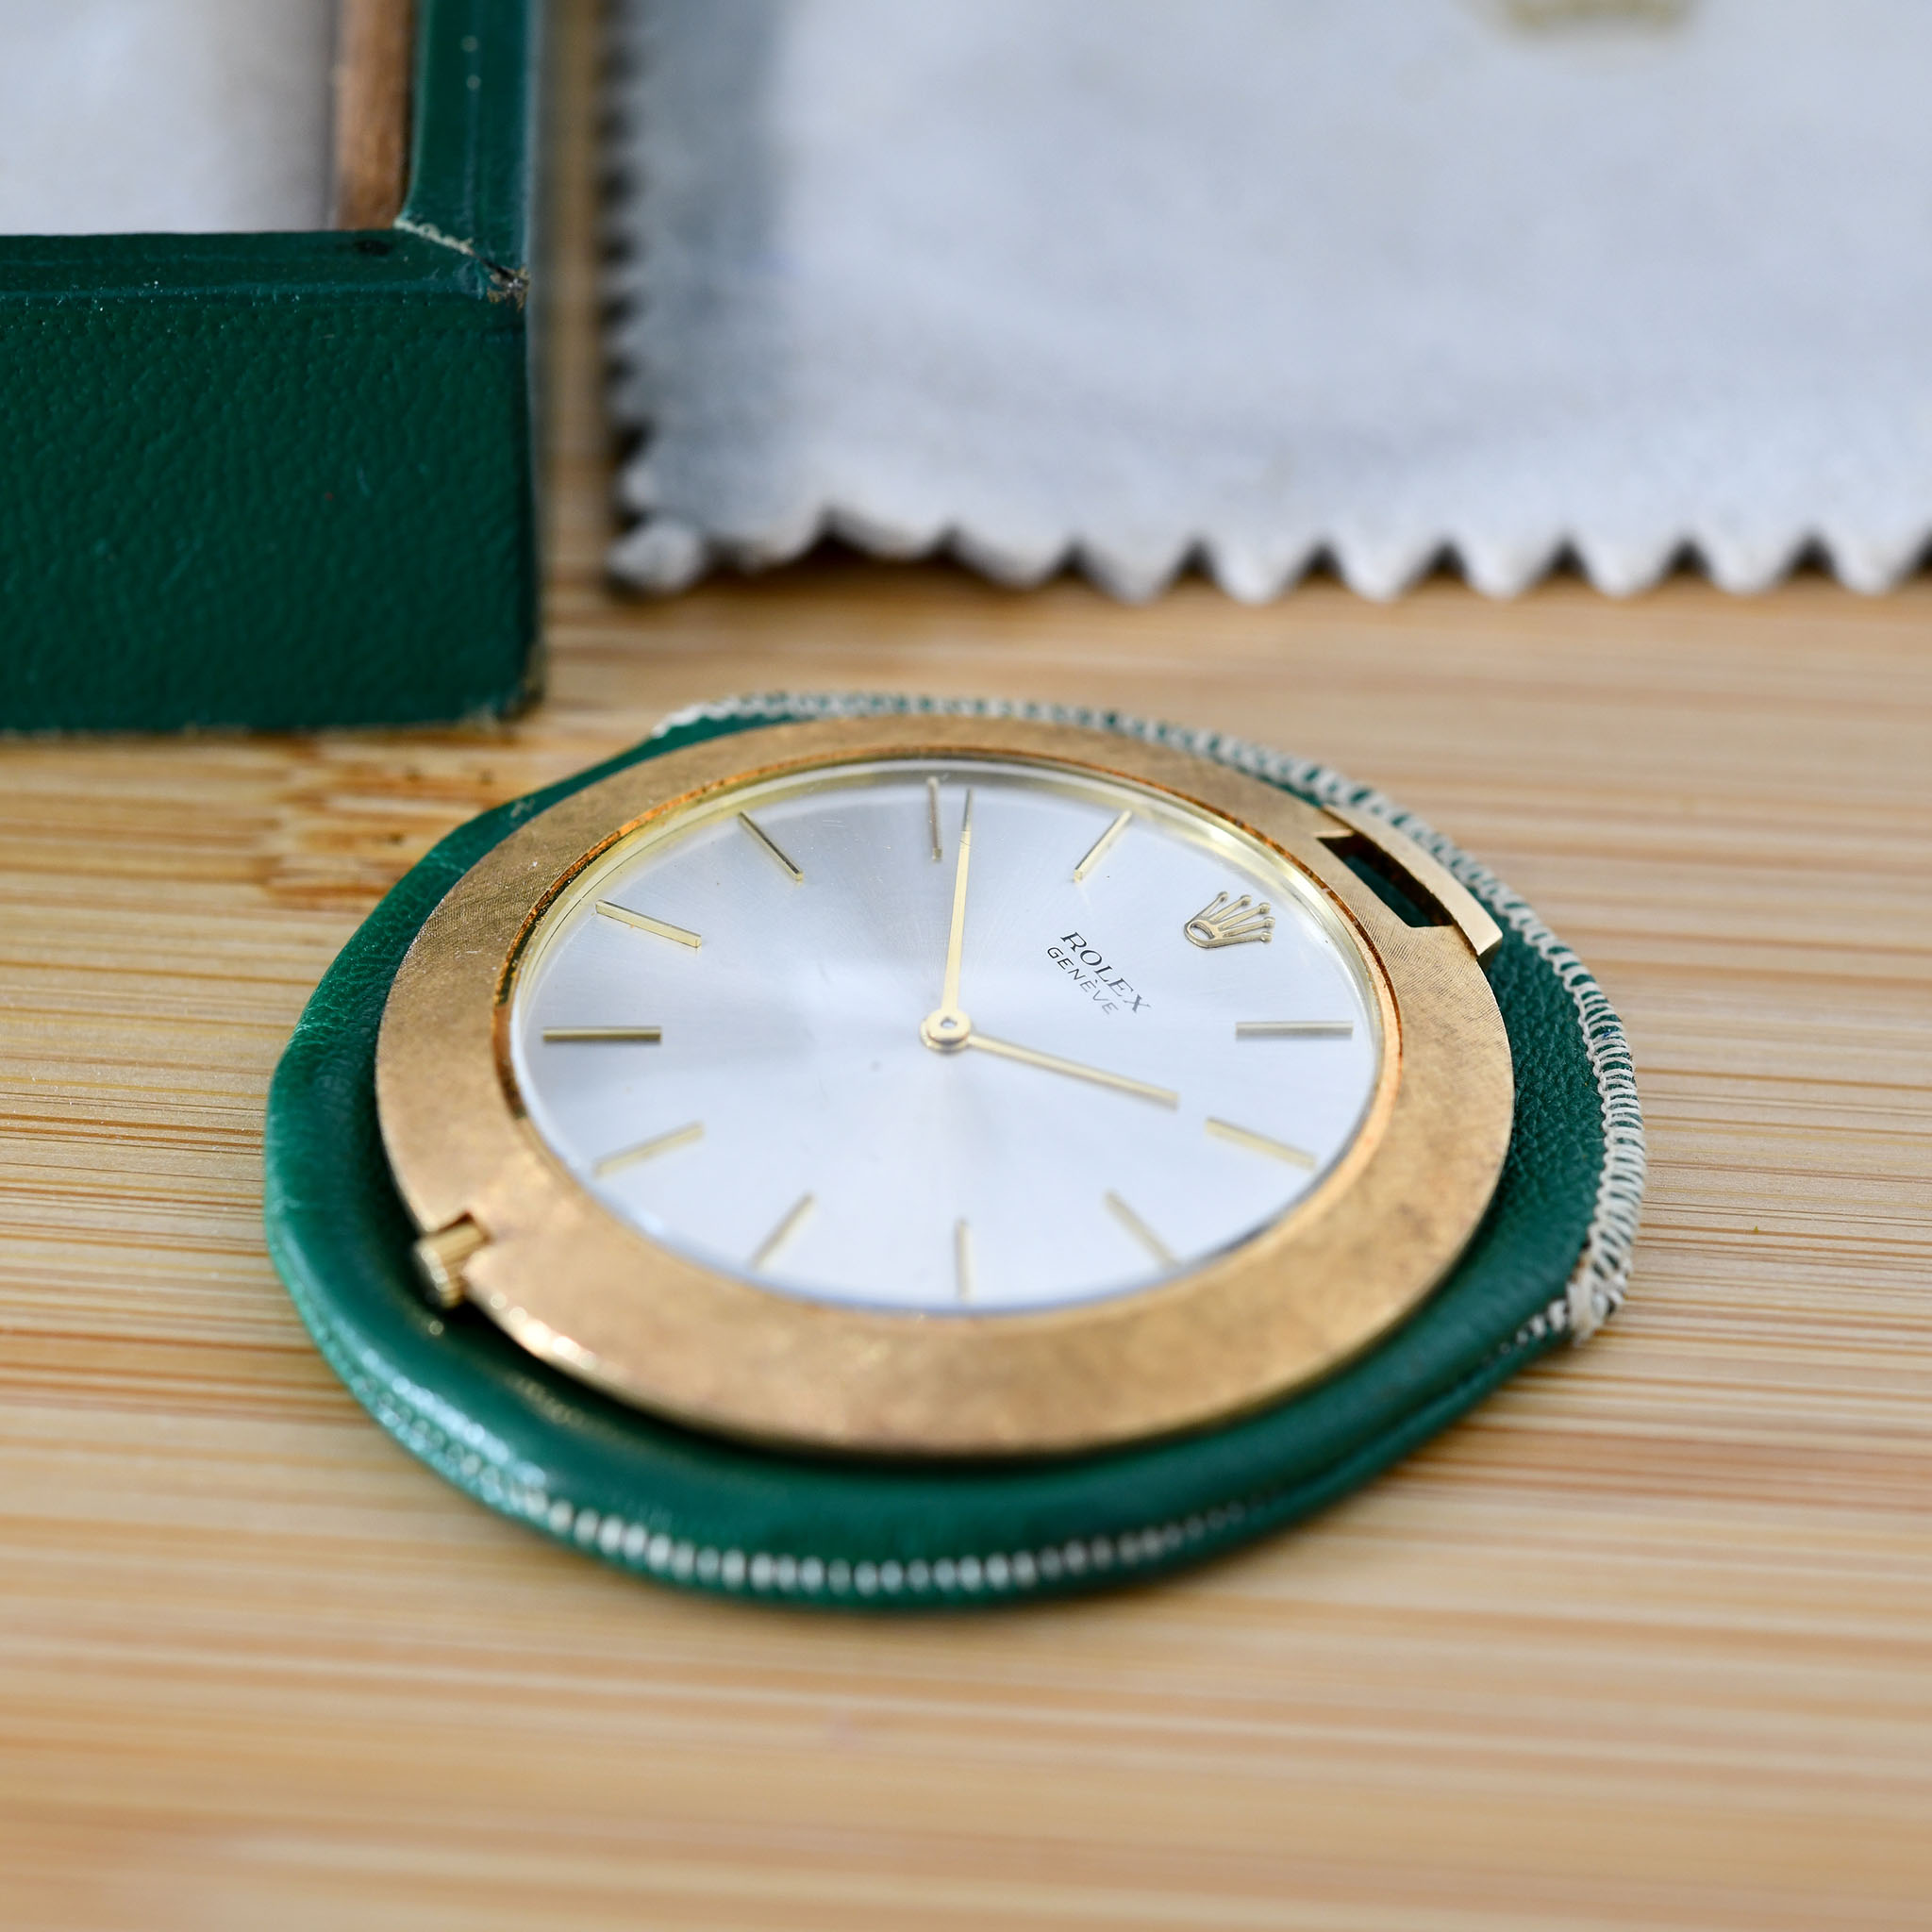 Rolex-Cellini-Pocket-watch-img-main4